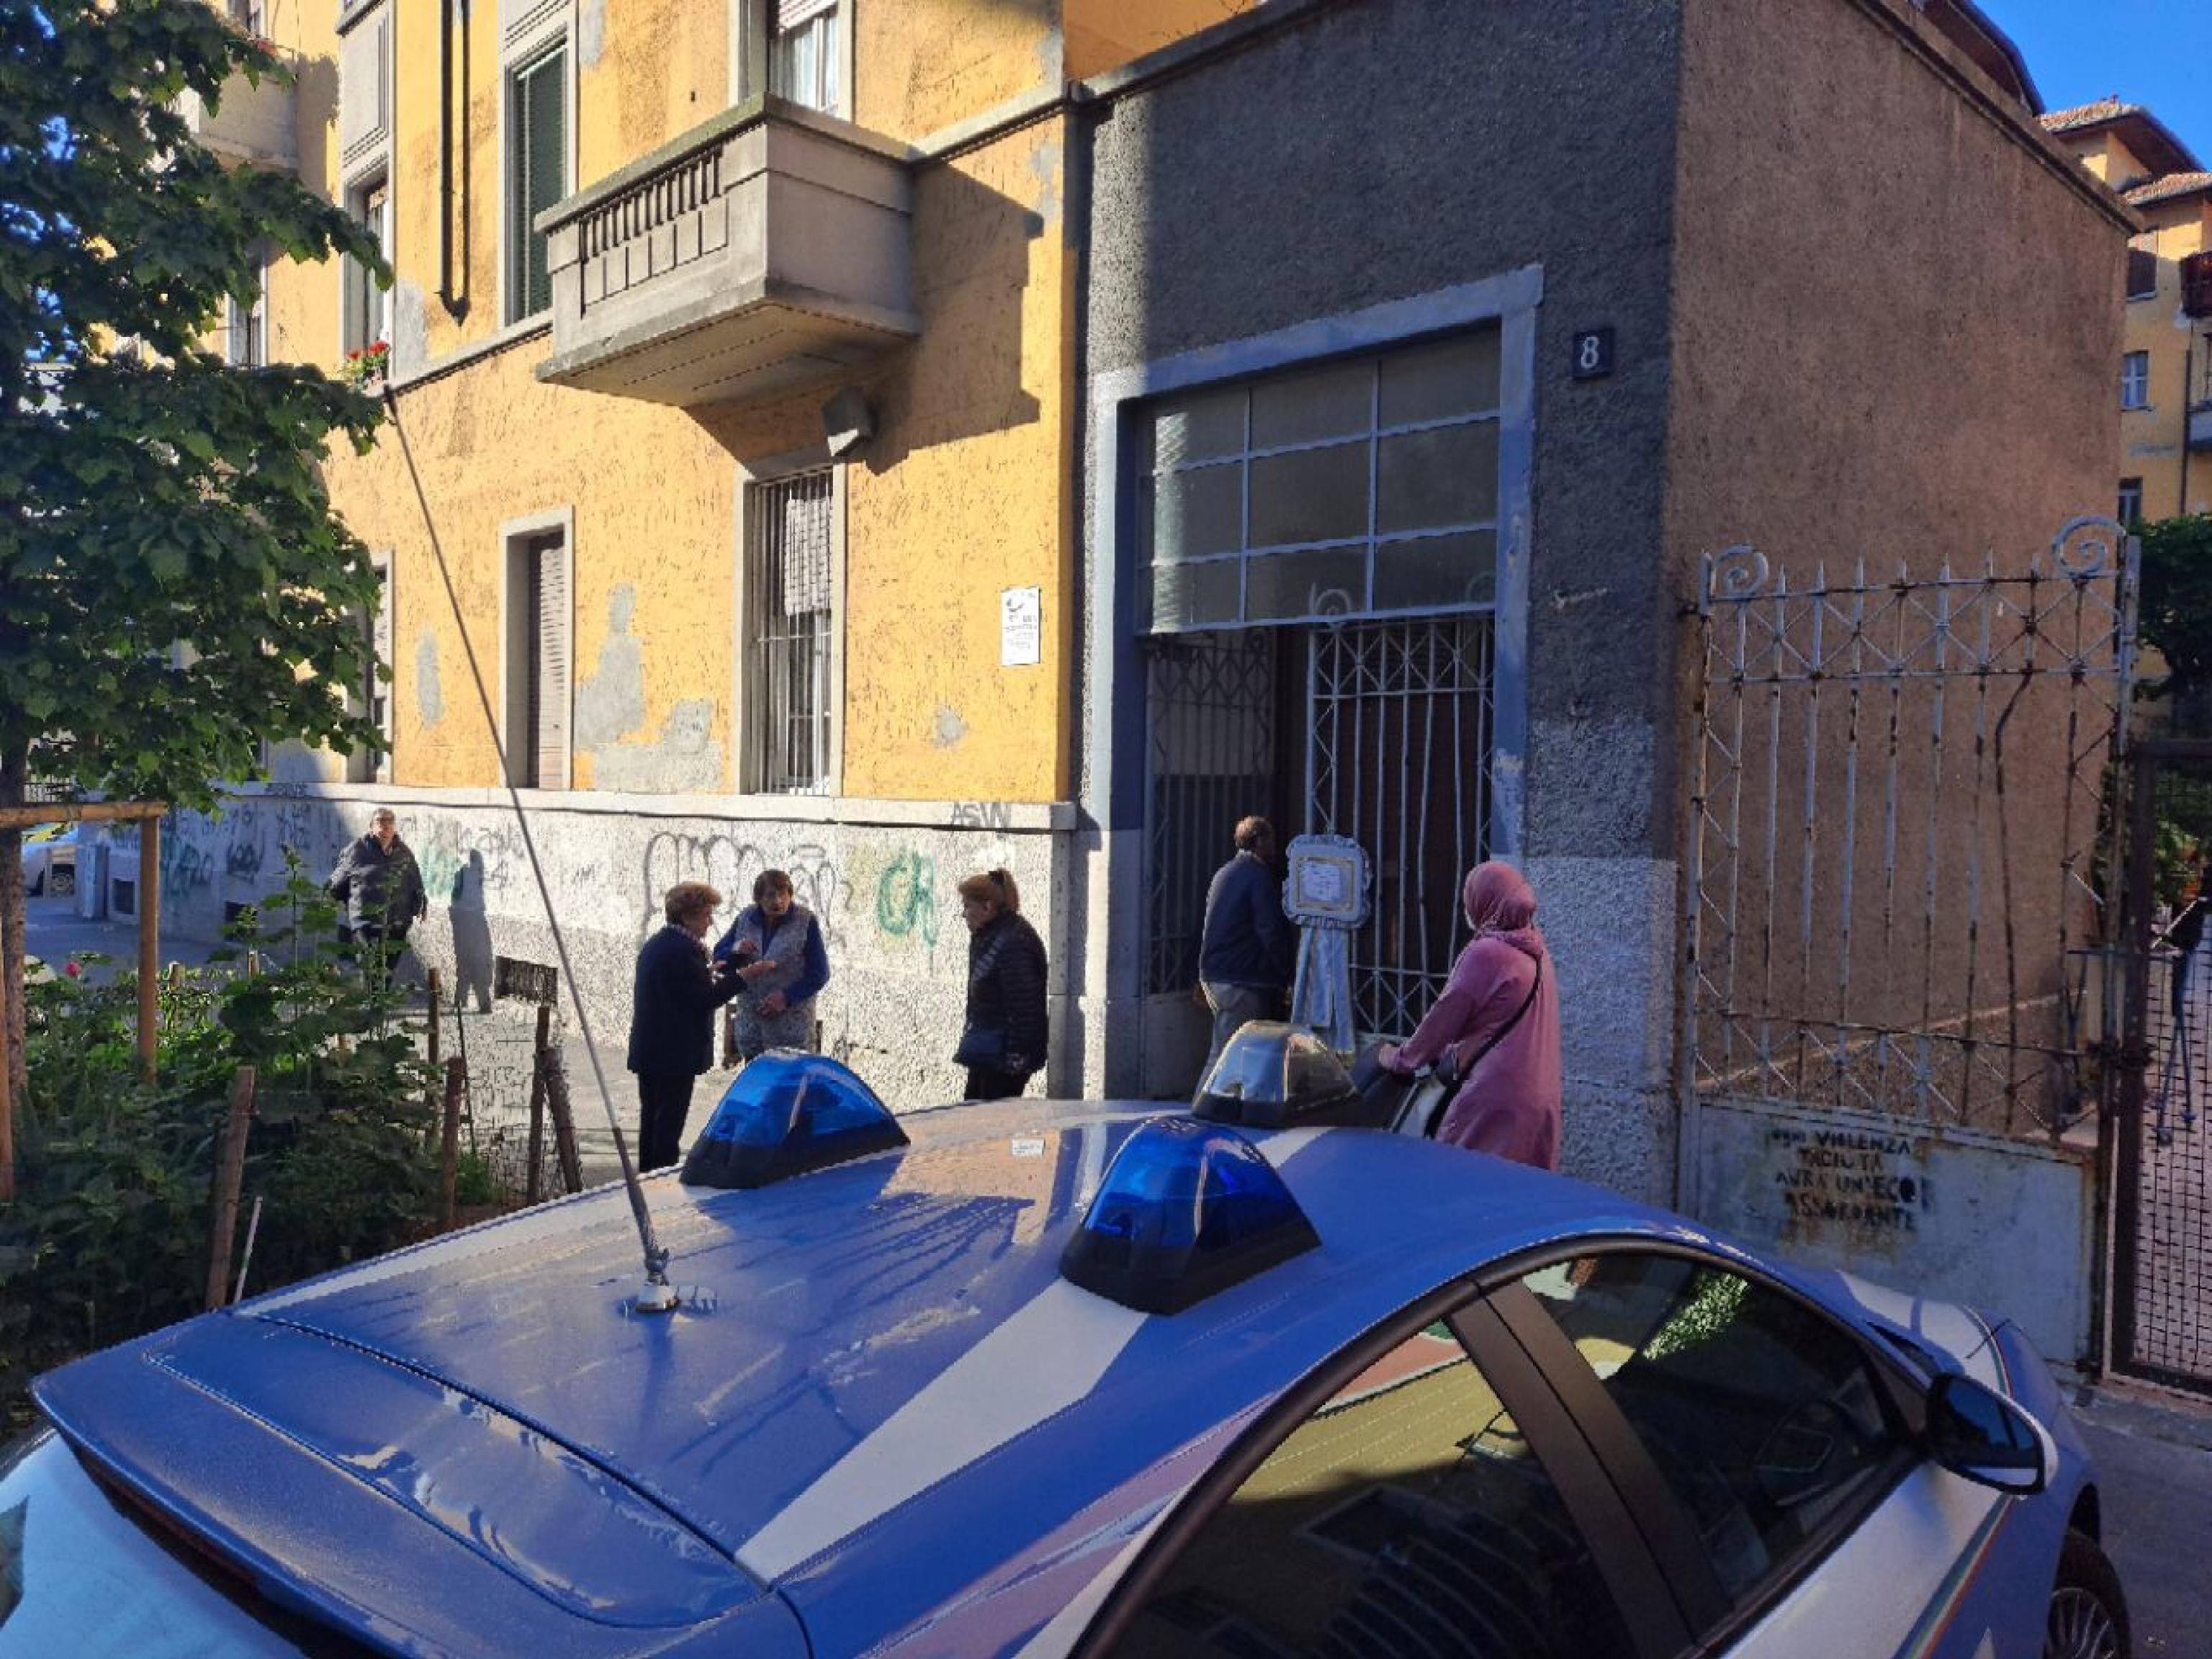 Il palazzo dove un uomo è stato ucciso in casa a coltellate a Milano, 26 aprile 2023.
ANSA/ANDREA FASANI